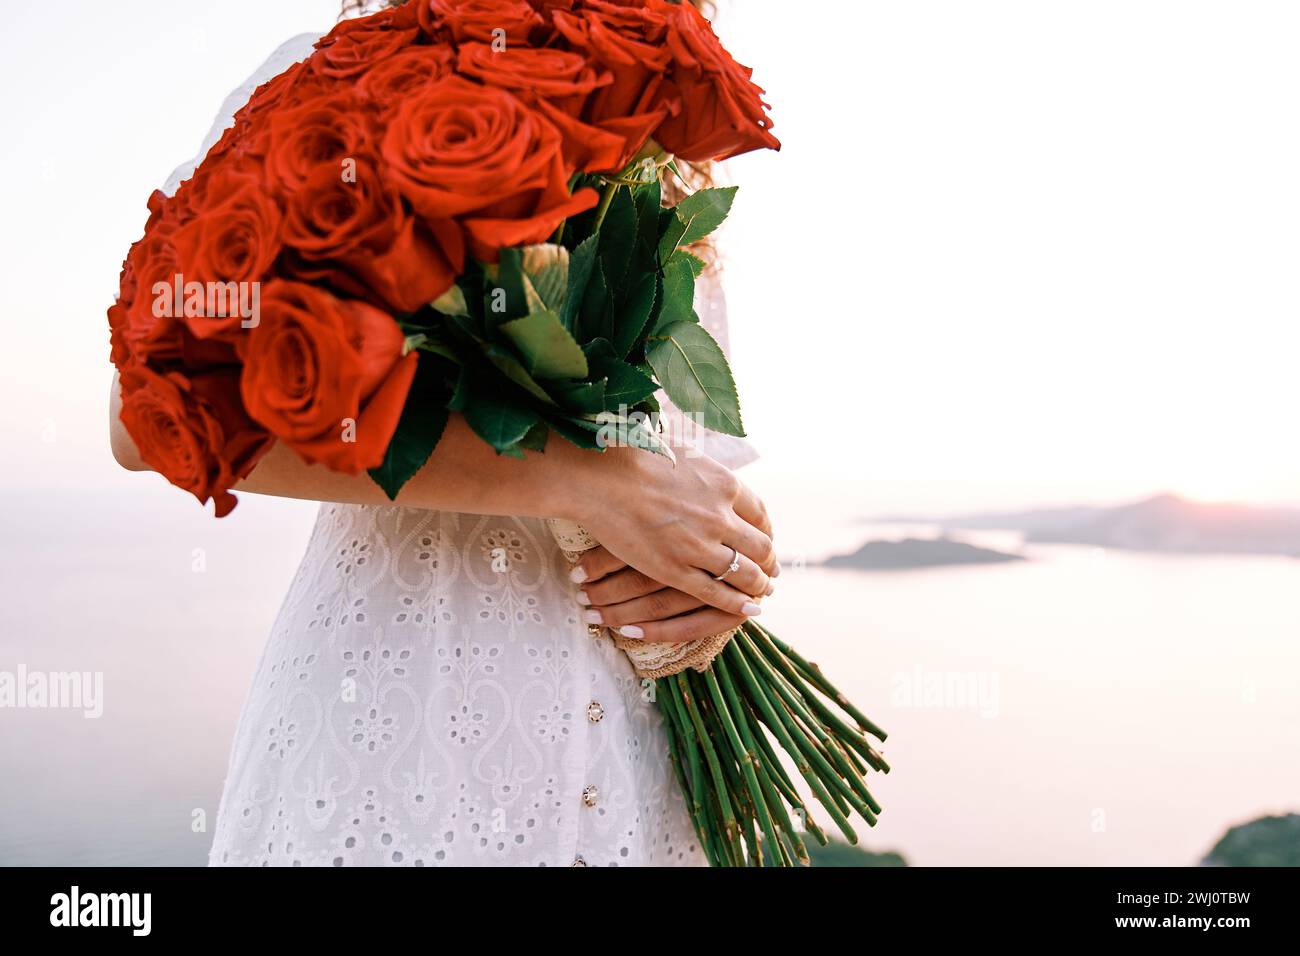 Ein riesiger Strauß roter Rosen in den Händen einer Frau mit einem Verlobungsring am Finger. Abgeschnitten. Gesichtslos Stockfoto